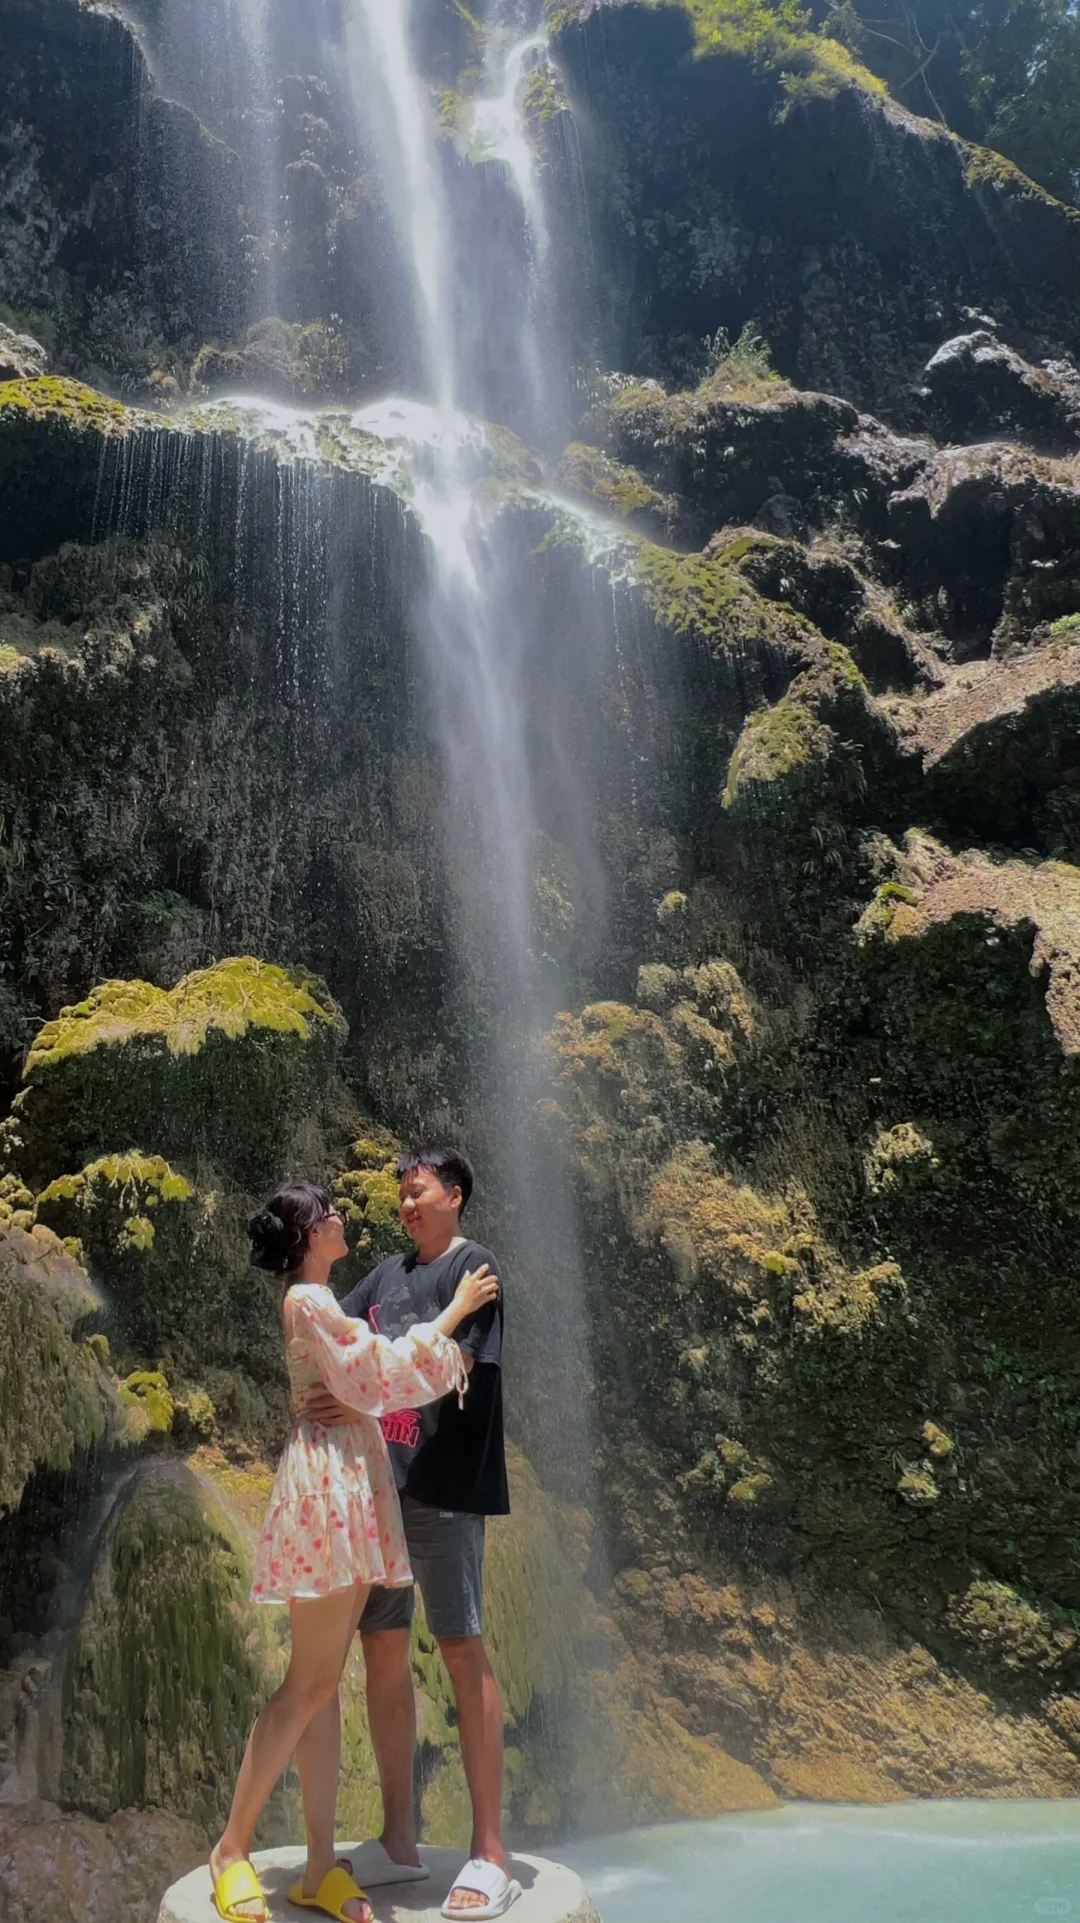 Cebu-The TUMALOG waterfall in Cebu, Philippines is very beautiful and refreshing